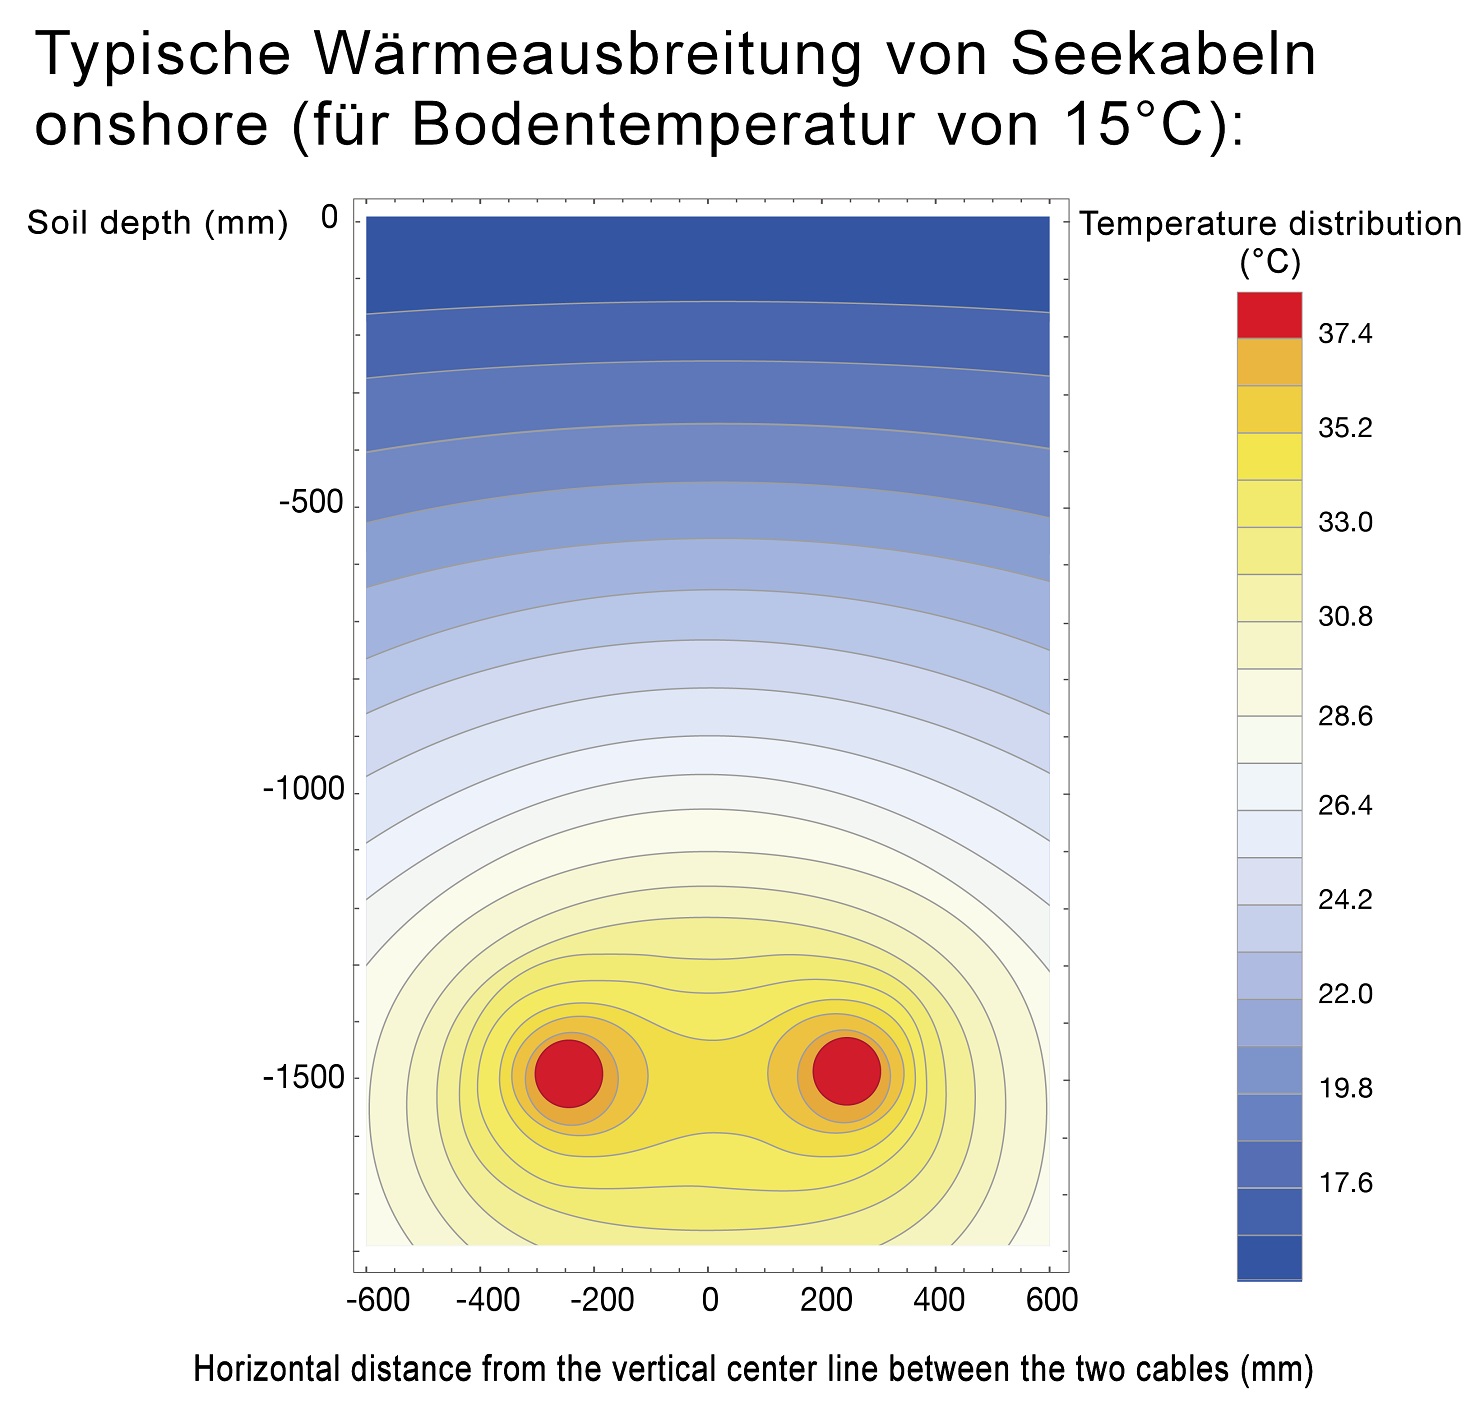 Typische Wärmeausbreitung von Seekabeln für eine Bodentemperatur von 15° C